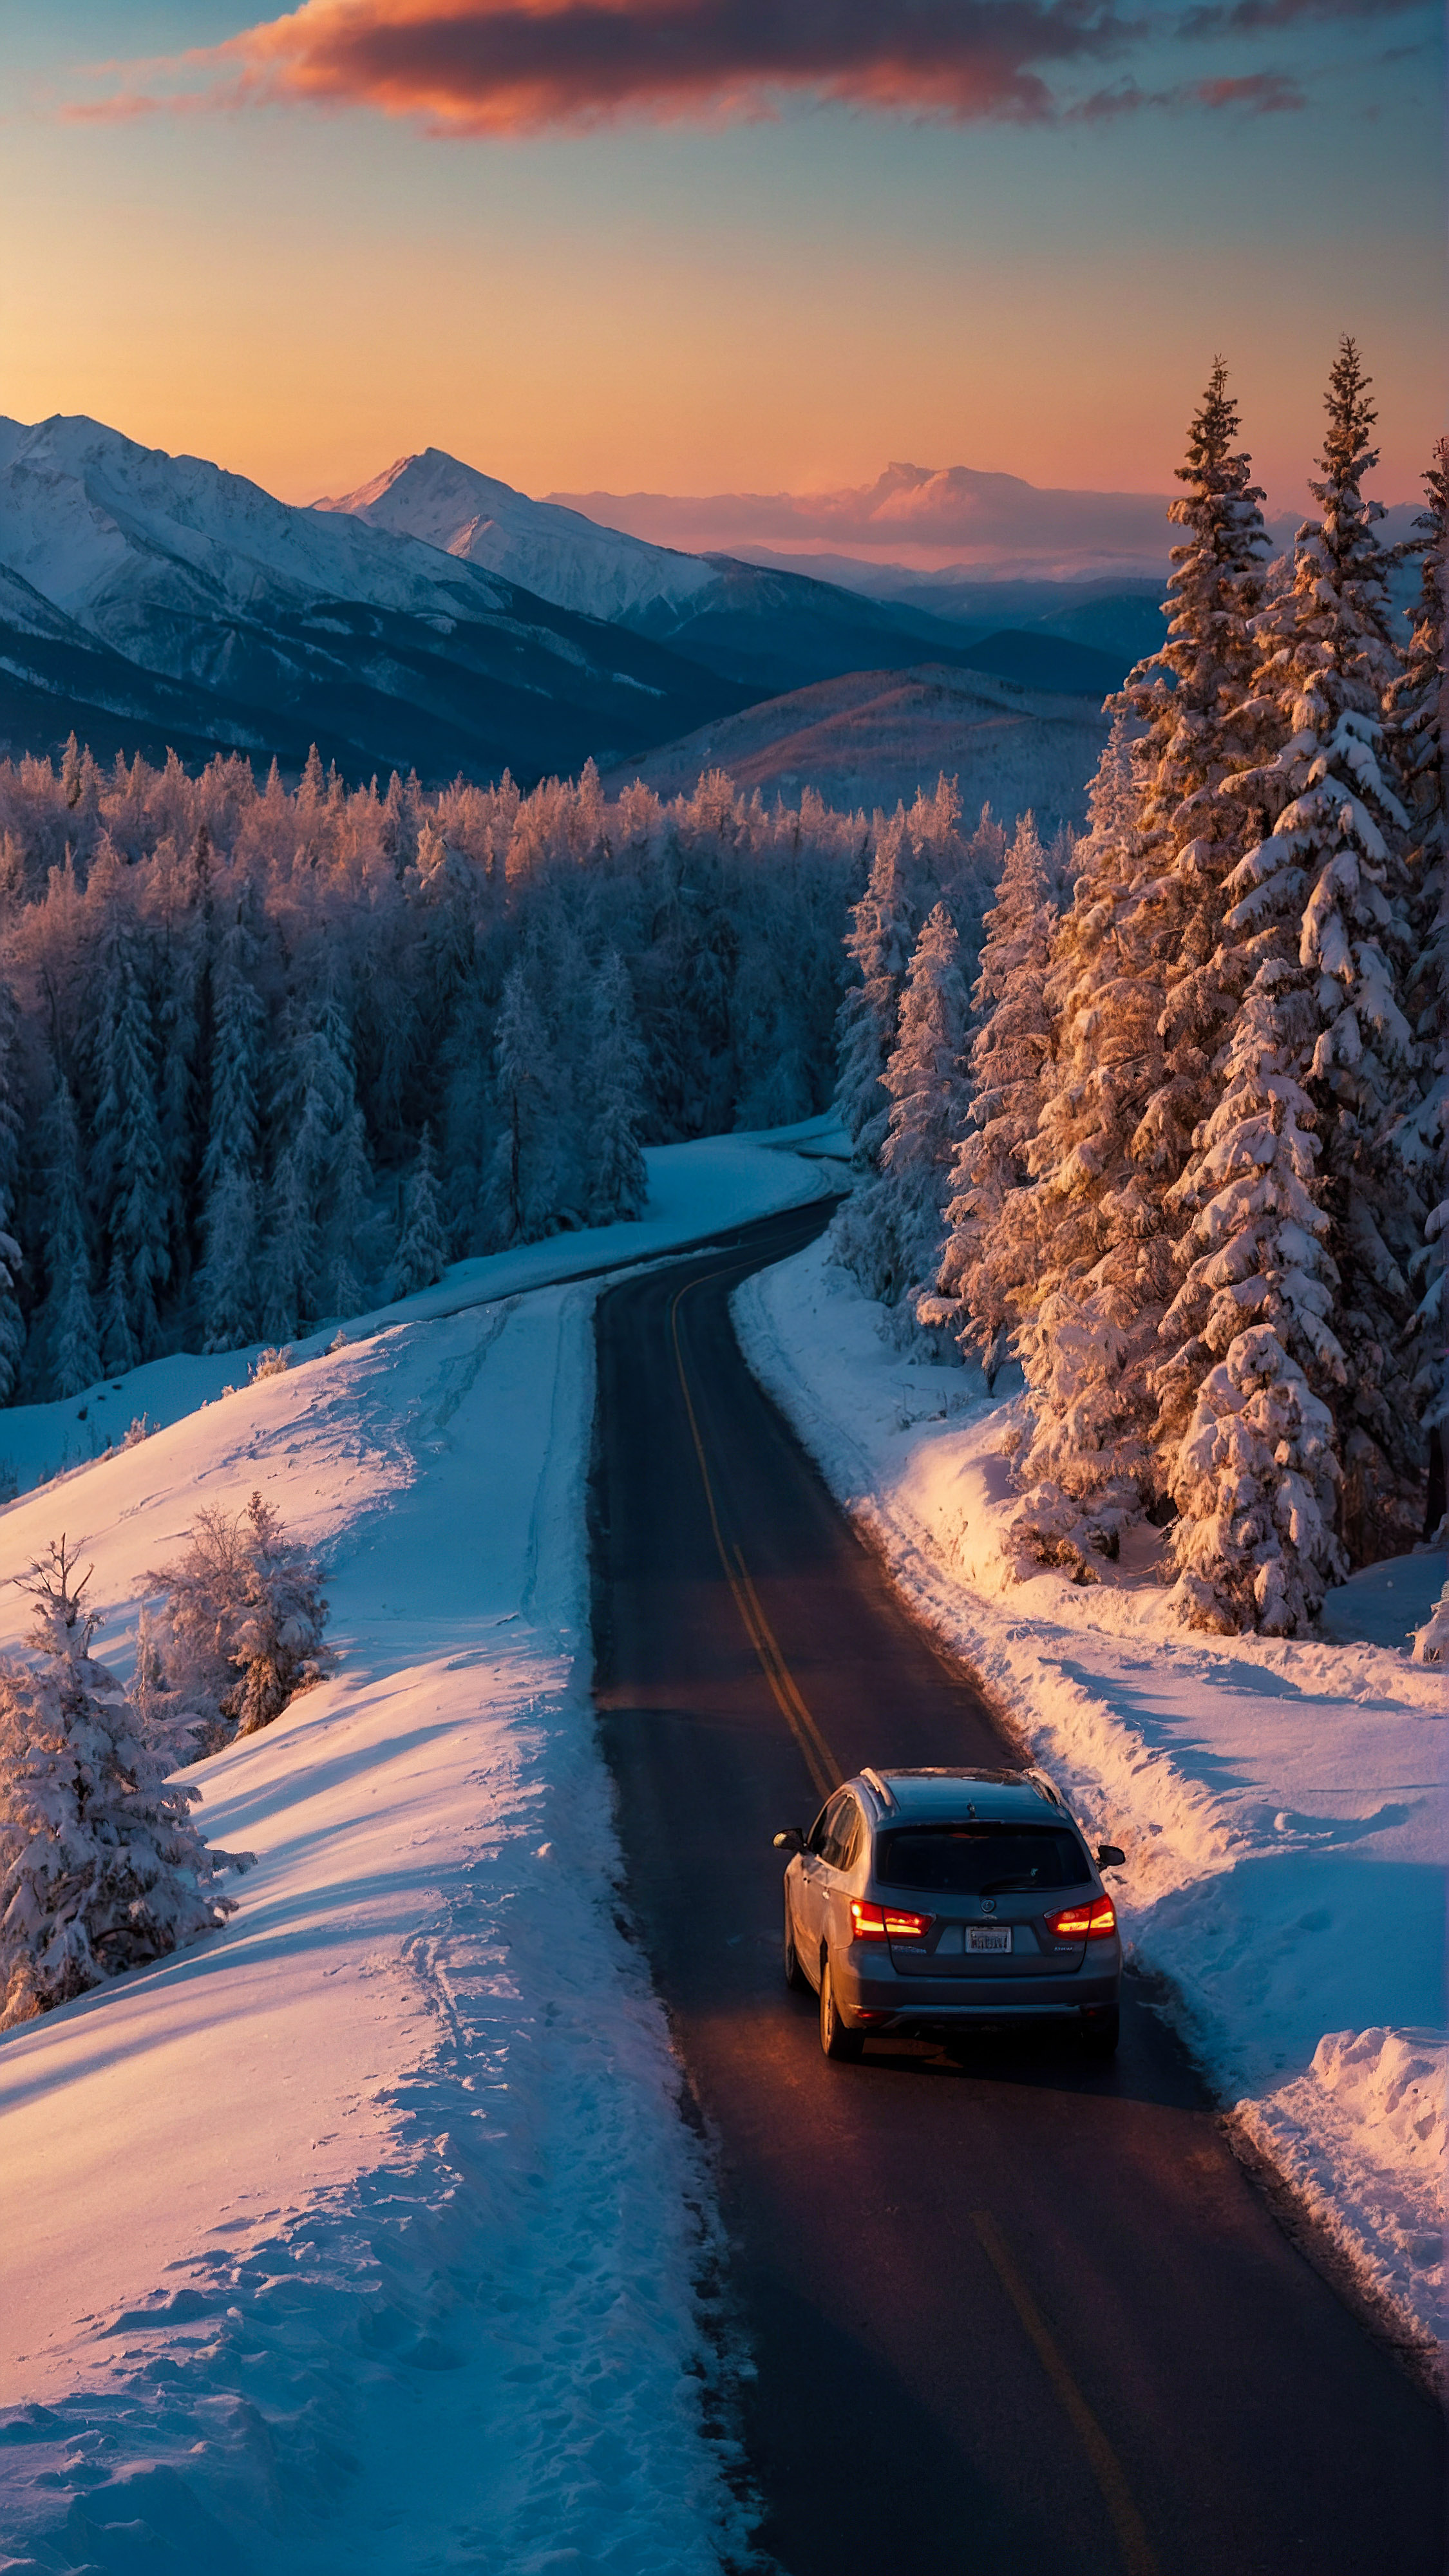 Téléchargez ce fond d'écran esthétique cool pour iPhone, un paysage d'hiver vibrant au crépuscule, avec une route sinueuse avec une voiture en déplacement, entourée d'arbres et de montagnes couverts de neige sous la lueur du soleil couchant.